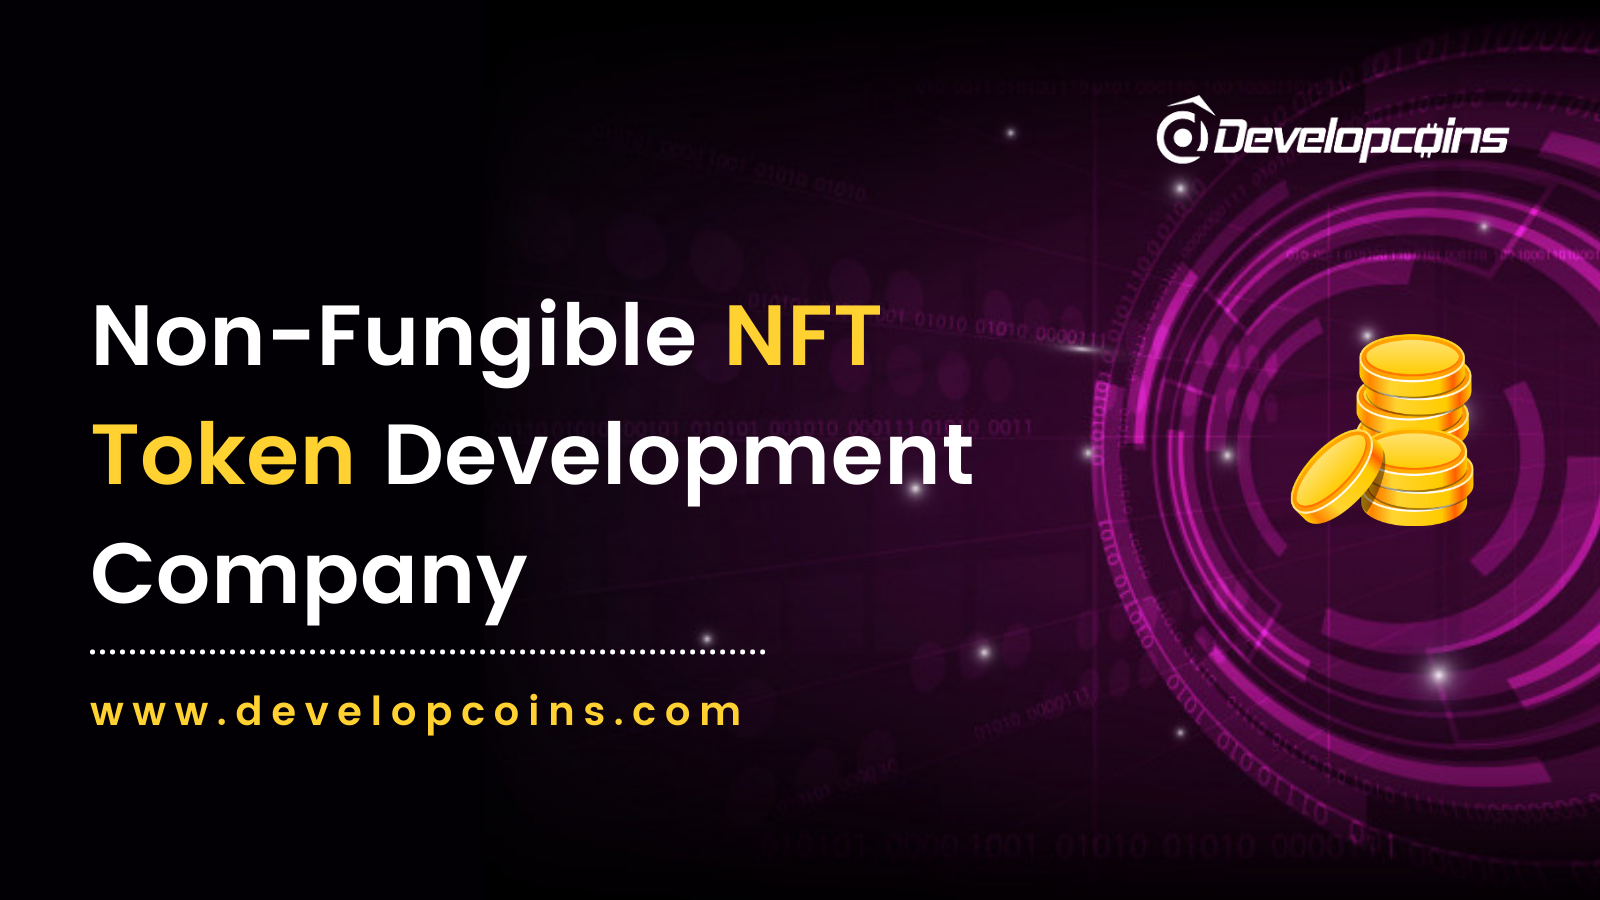 GRE
Non-Fungible NFT : :
Token Development . P|
Company

 

www.developcoins.com